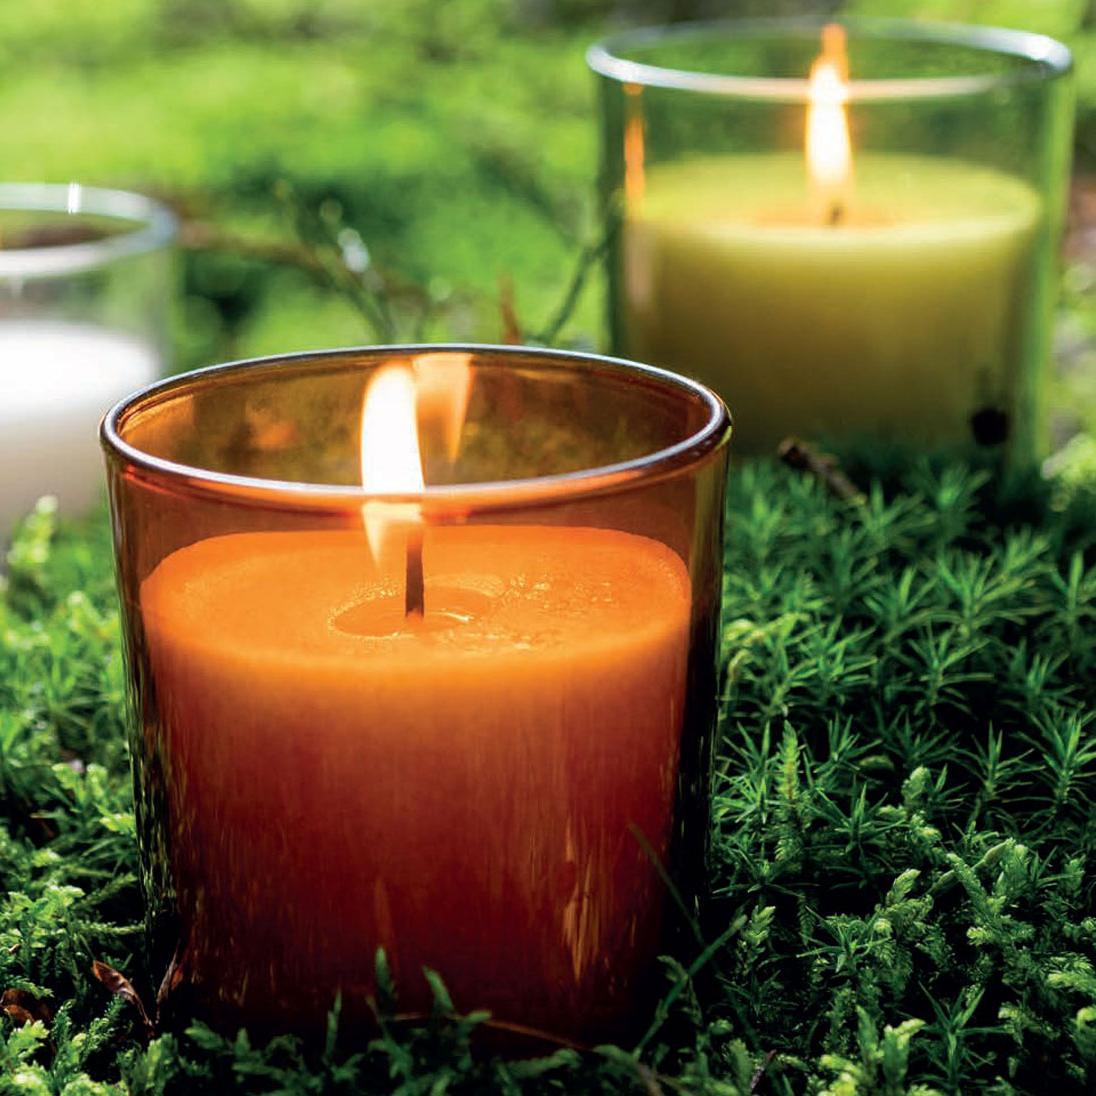 Nahaufnahme einer brennenden Duftkerze in einem orangefarbenen Glas. Im Hintergrund erkennt man noch zwei weitere Kerzen, eine mit grünem Glas und eine mit klarem. Die Gläser stehen auf dichtem, grünem Moos.